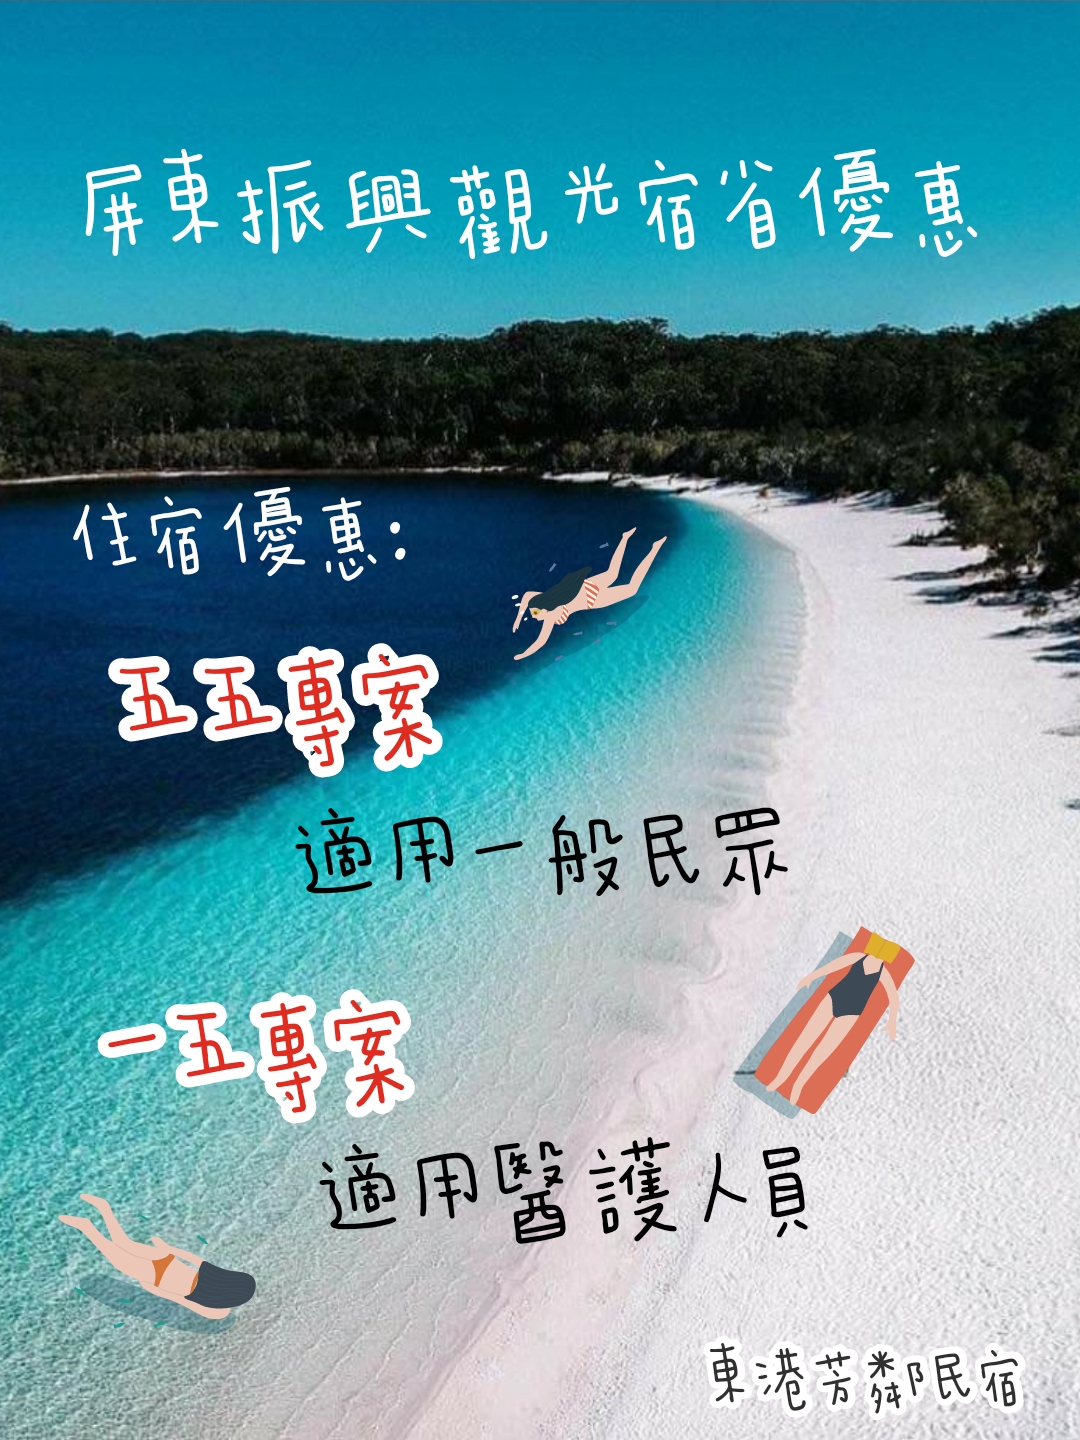 屏東東港芳鄰民宿(Funny B&B)的最新消息圖片